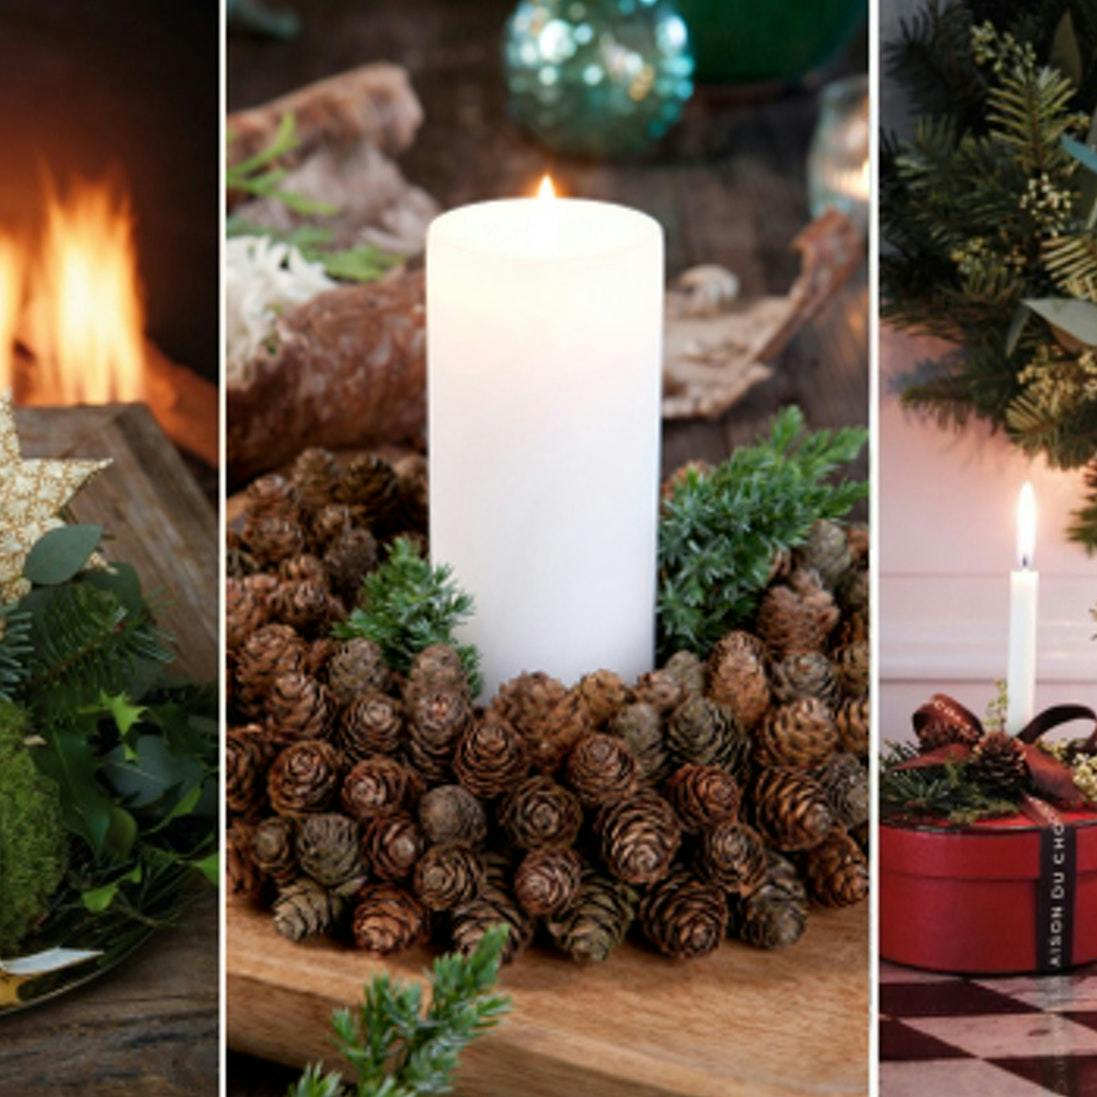 Juledekorationer: 9 hjemmelavede dekorationer til jul 